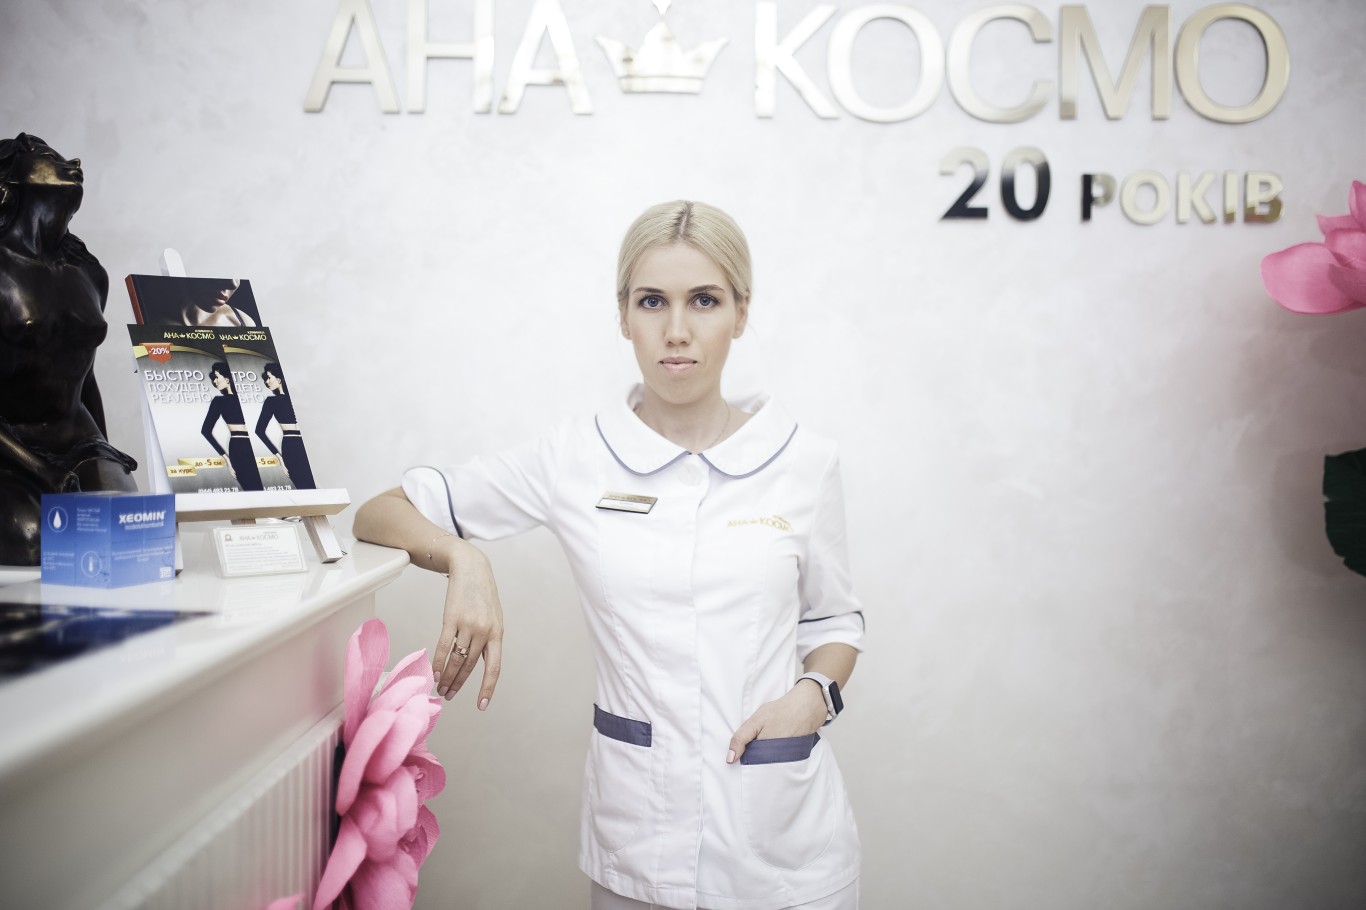 Косметолог Злобова Анна Сергеевна - описание, фото, отзывы в Pokupon